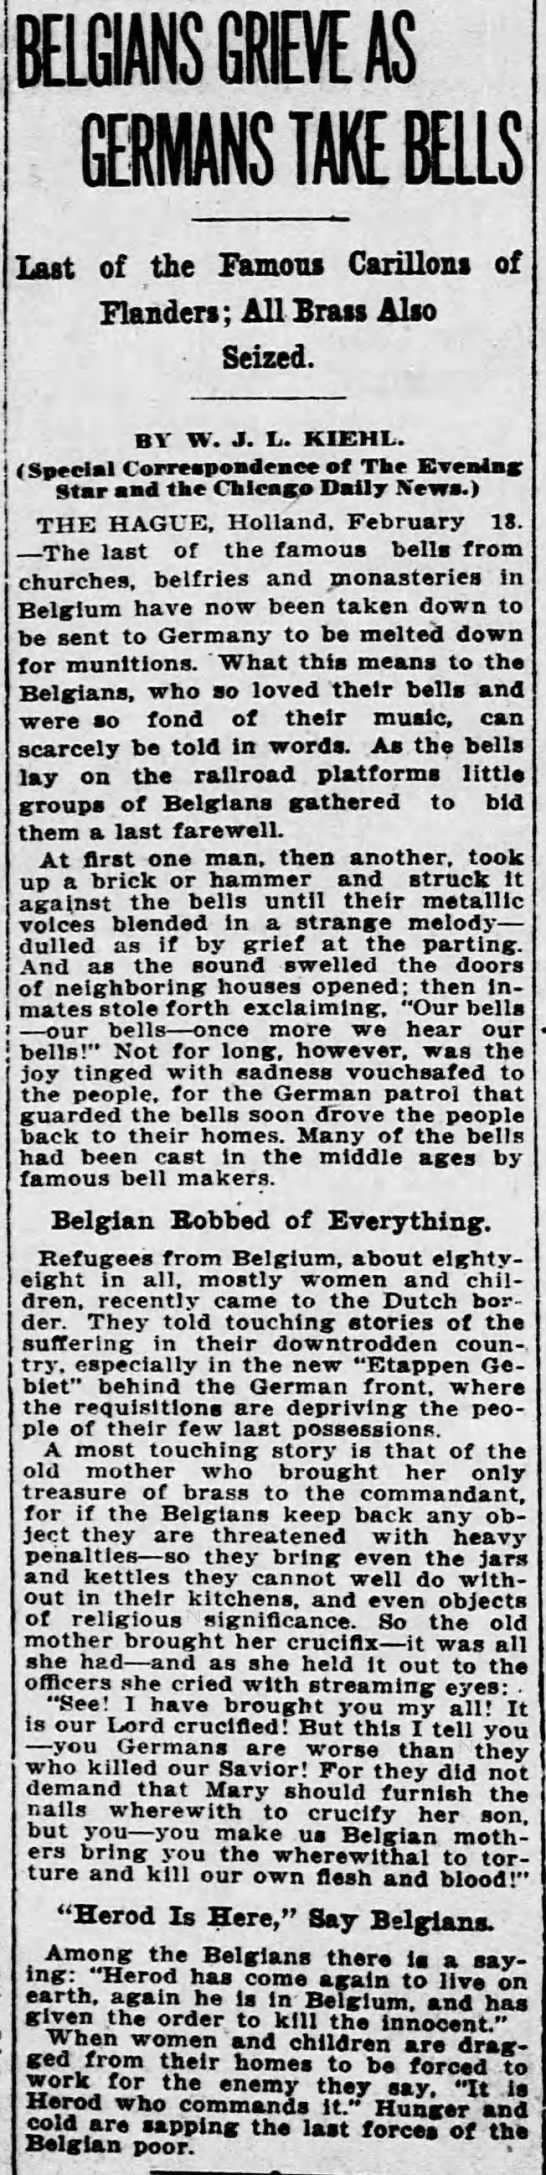 Belgians Grieve as Germans Take Bells - 